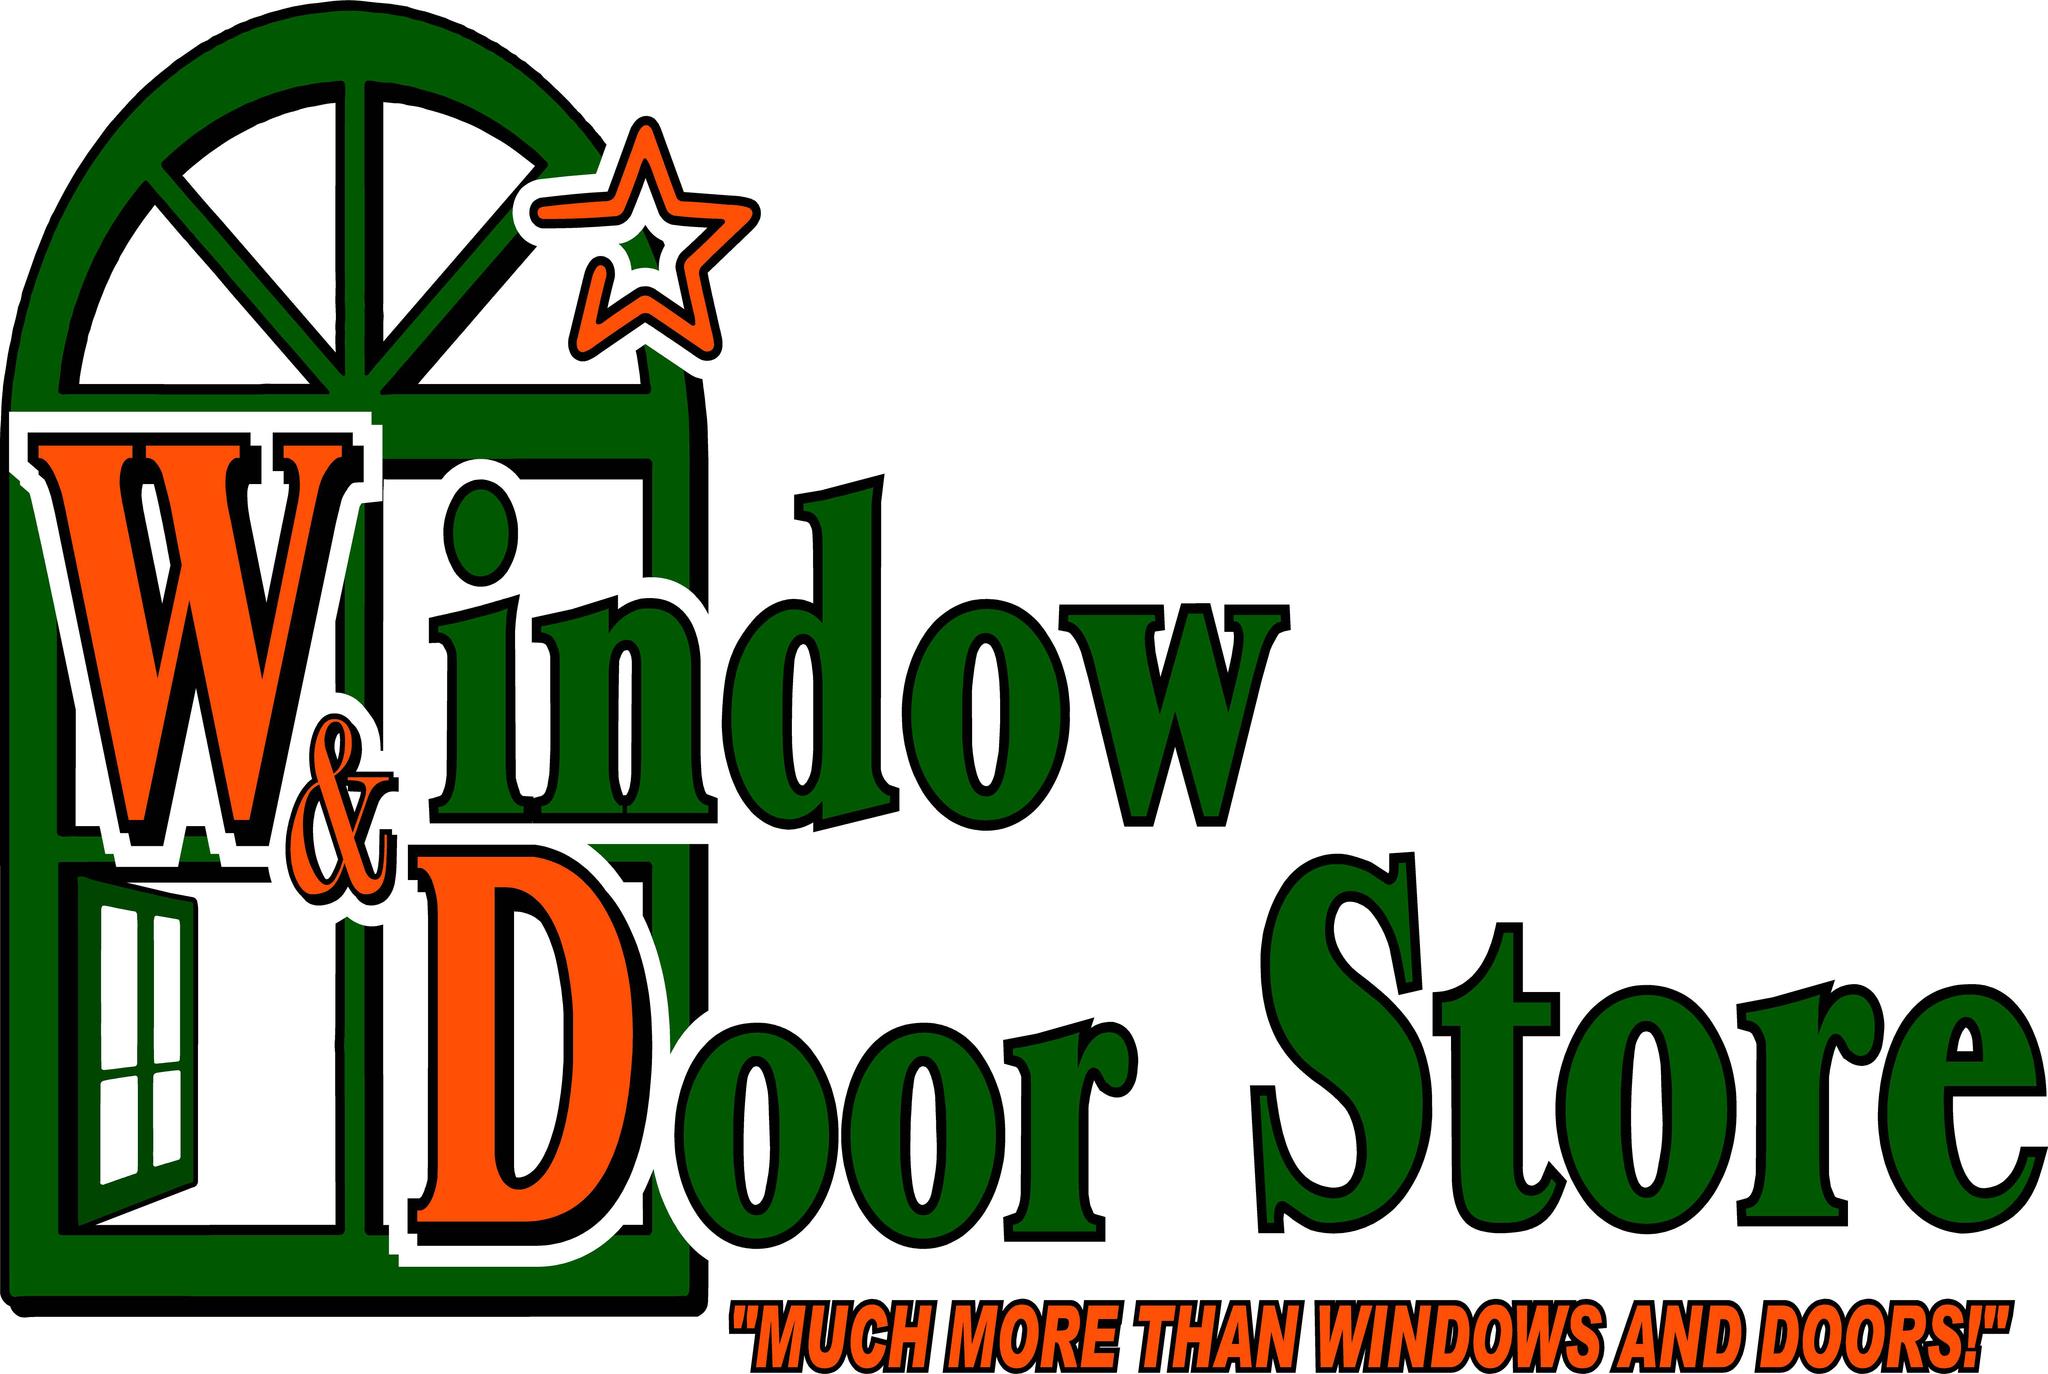 Company logo of Window & Door Store